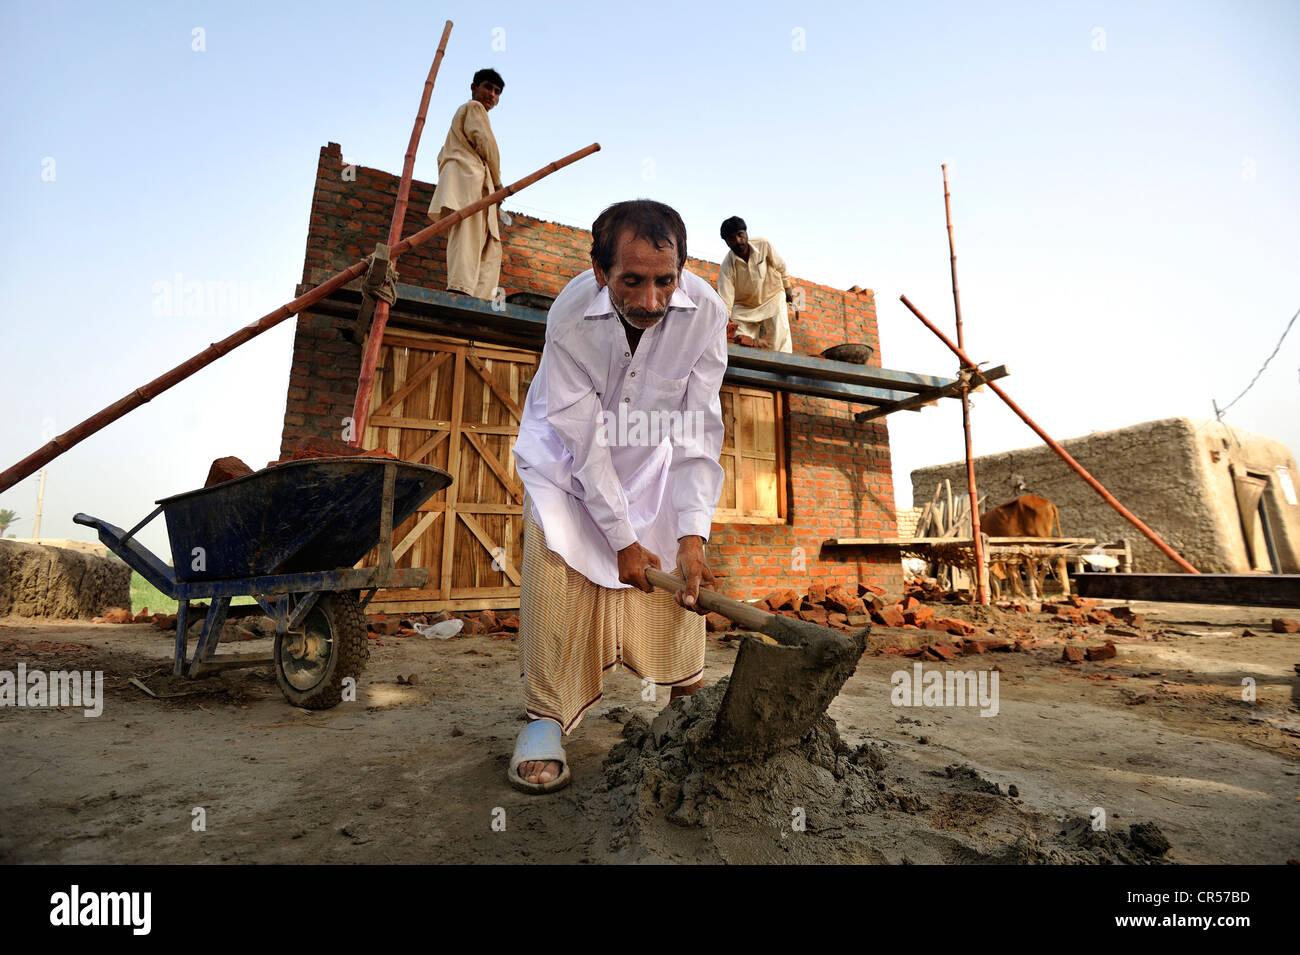 El hombre la preparación de cemento, ladrillos de construcción de casas para familias cuyas casas fueron destruidas durante la catástrofe de las inundaciones Foto de stock